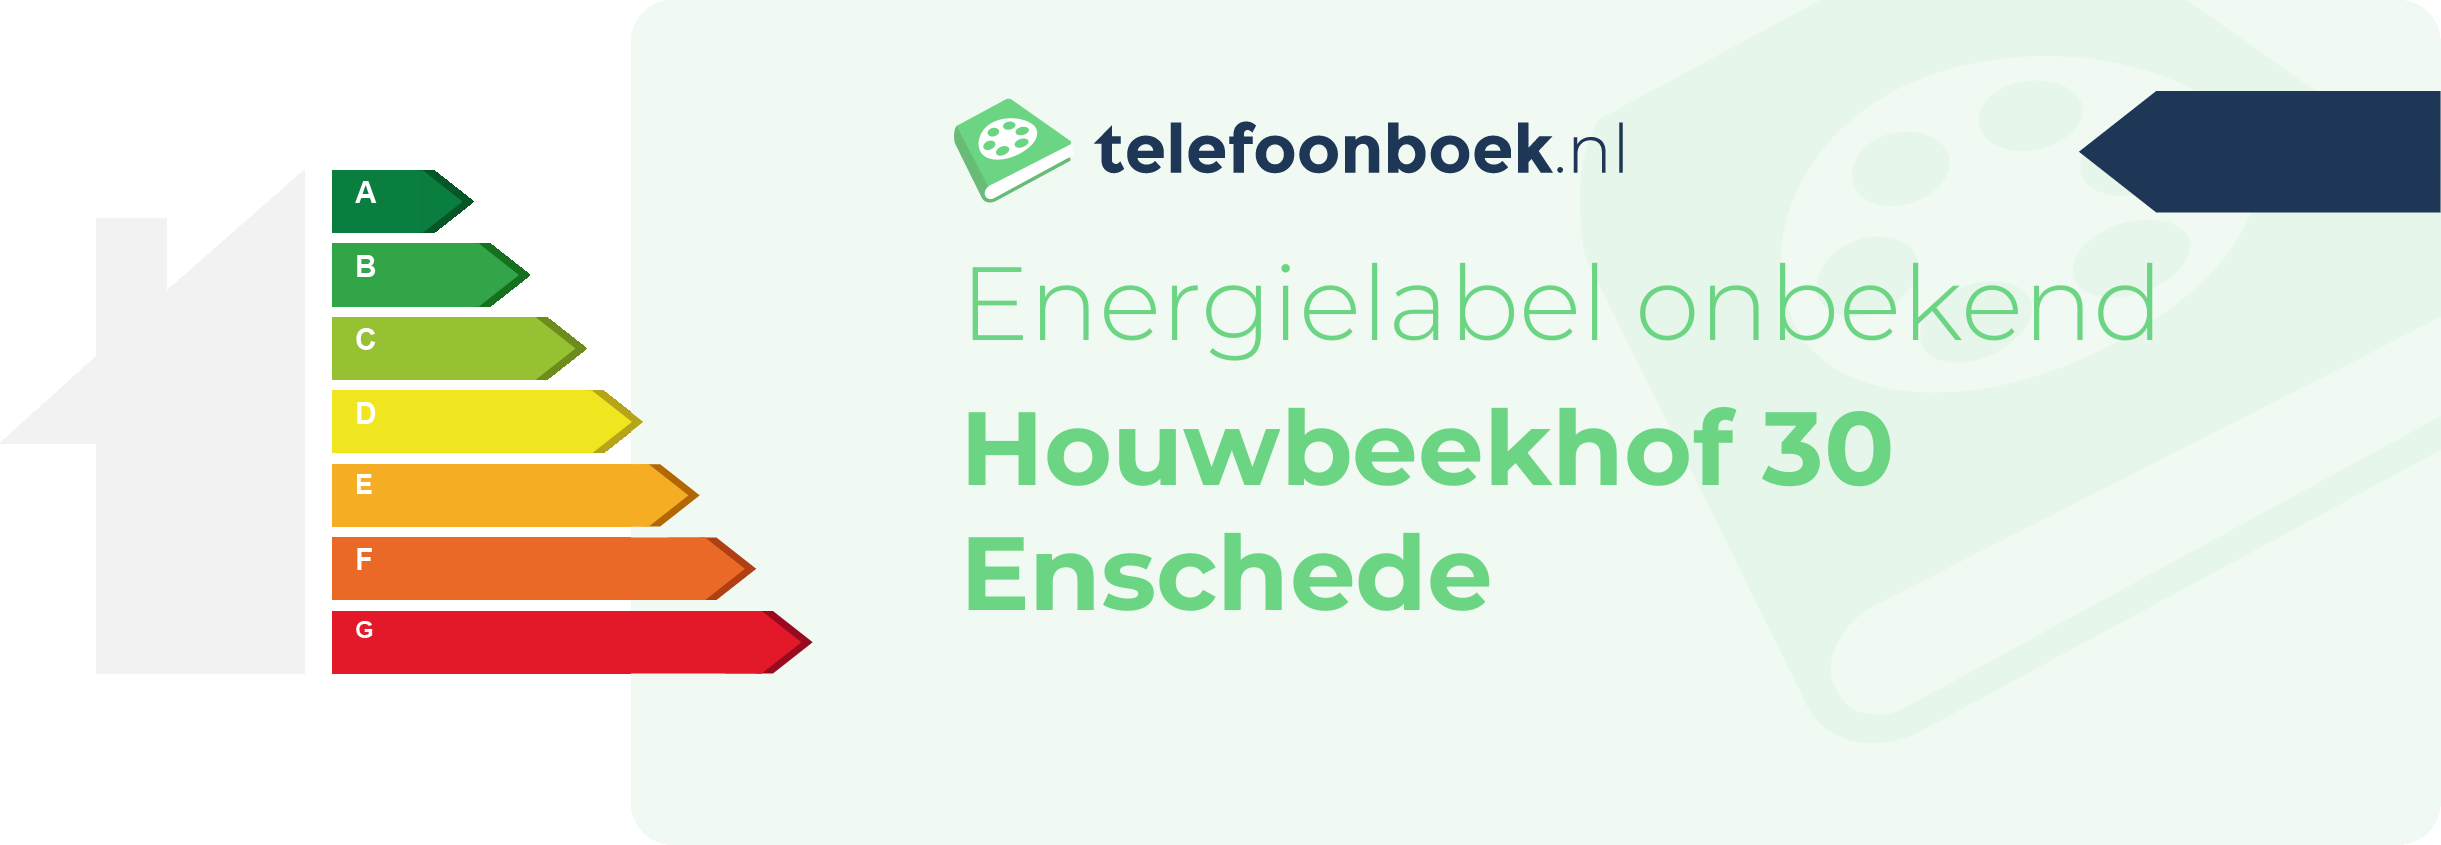 Energielabel Houwbeekhof 30 Enschede